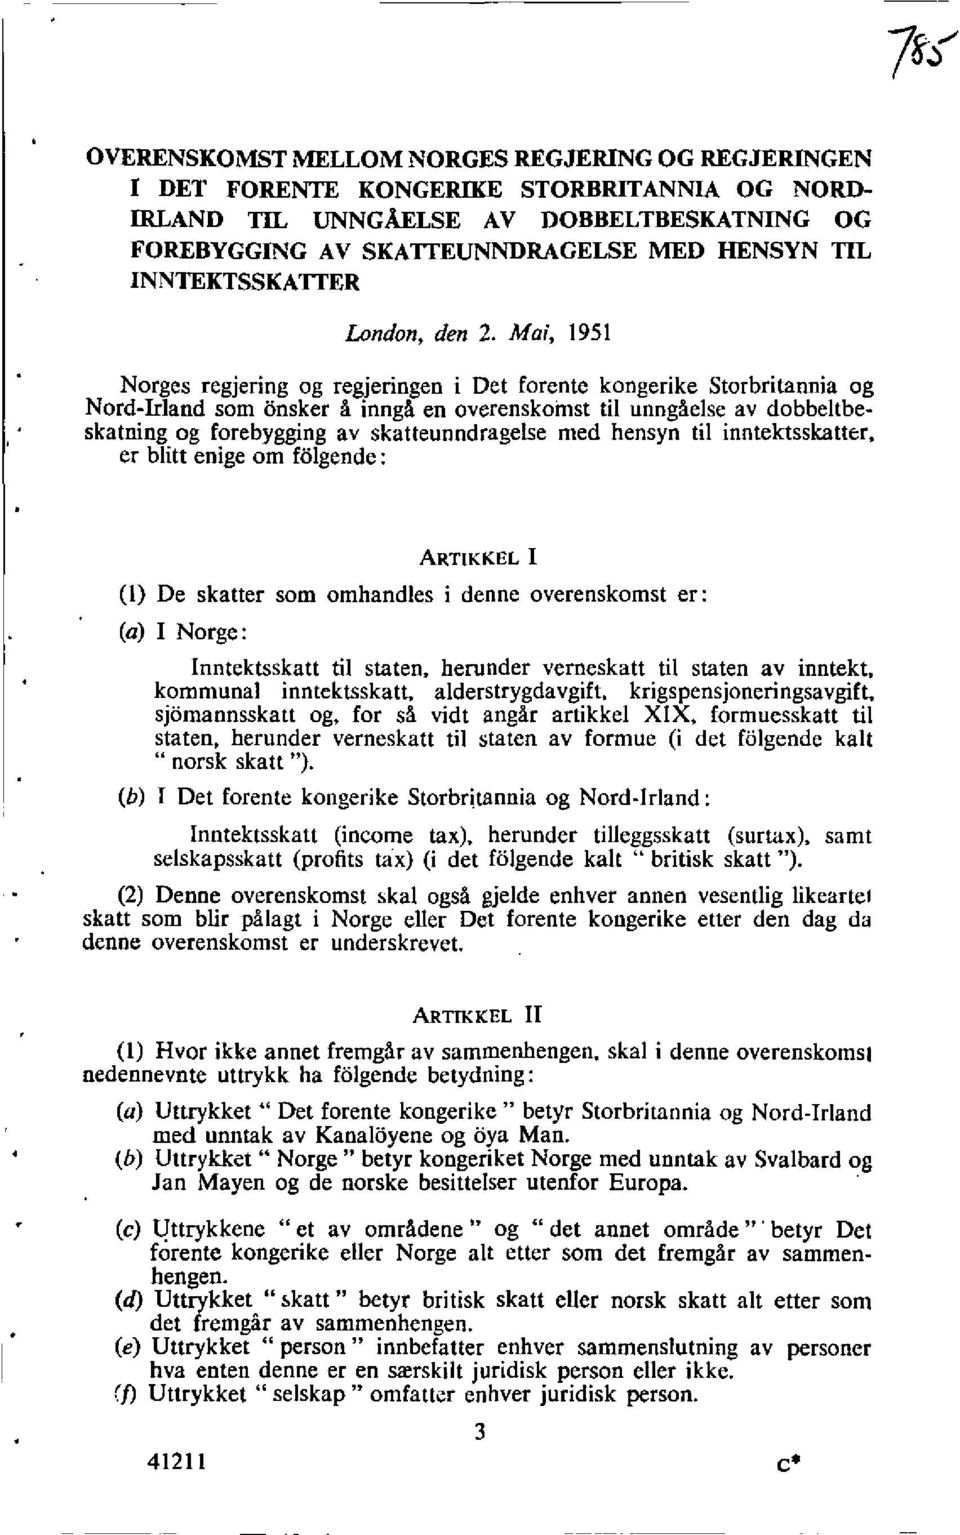 Mai, 1951 Norges regjering og regjeringen i Det forente kongerike Storbritannia og Nord-Inland som onsker A innga en overenskomst til unngaelse av dobbeltbeskatning og forebygging av